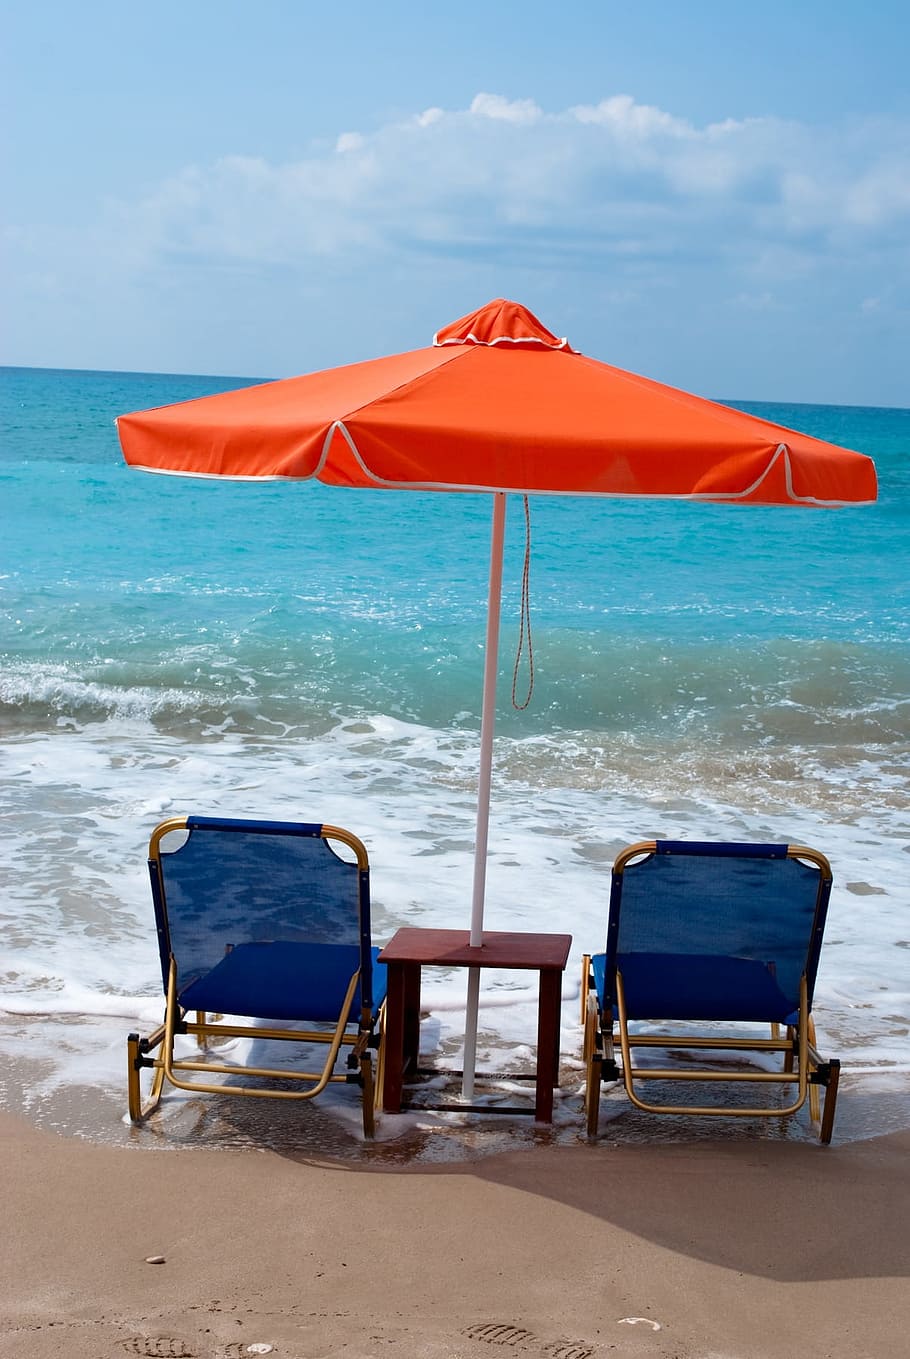 Beach, Umbrella, Chair, Chairs, Sea, beach, umbrella, ocean, sand, horizon over water, relaxation